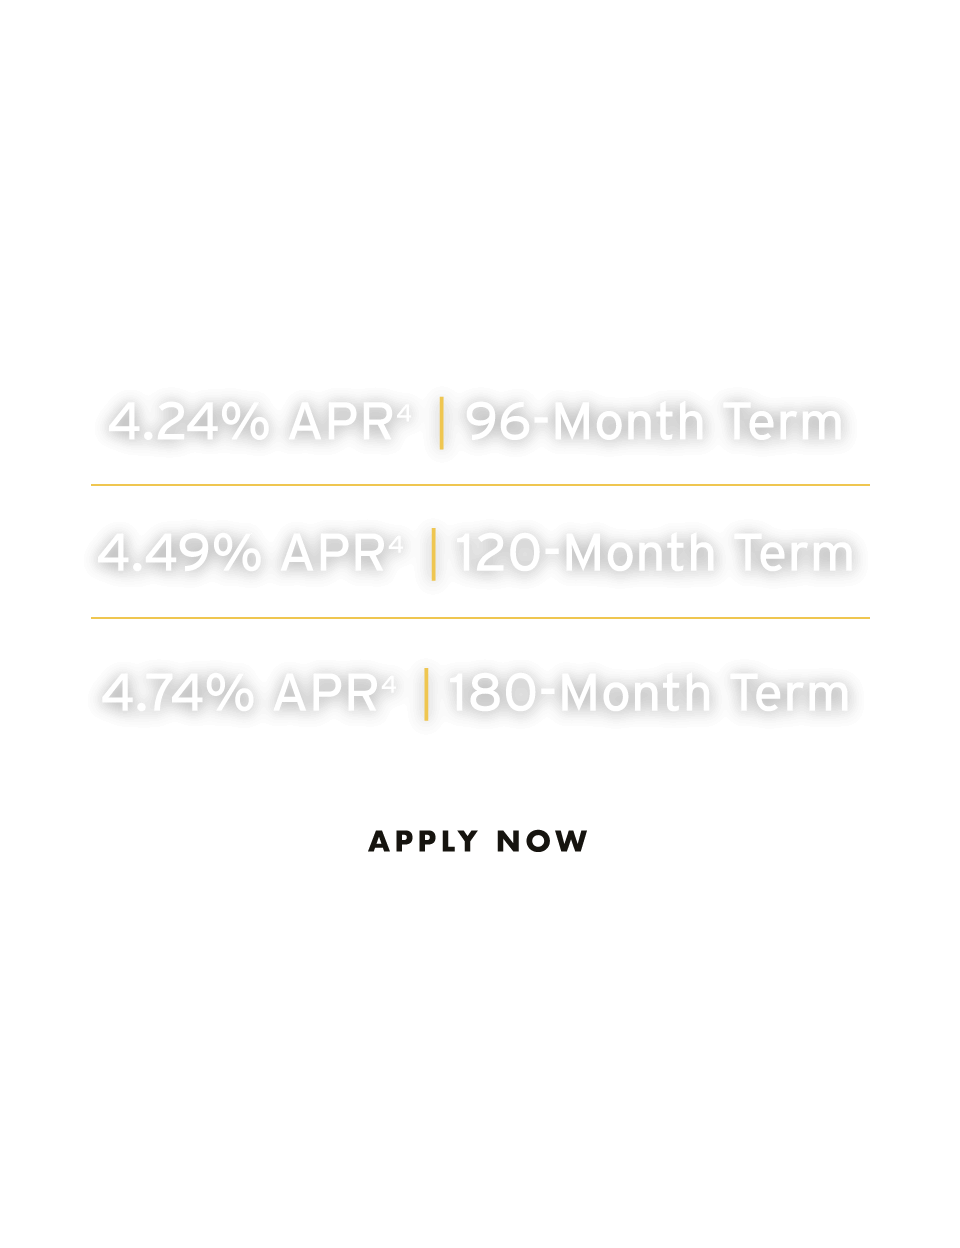 Looking for a long-term escape? 4.24% APR | 96-Month Term, 4.49% APR | 120-Month Term, 4.74% APR | 180-Month Term